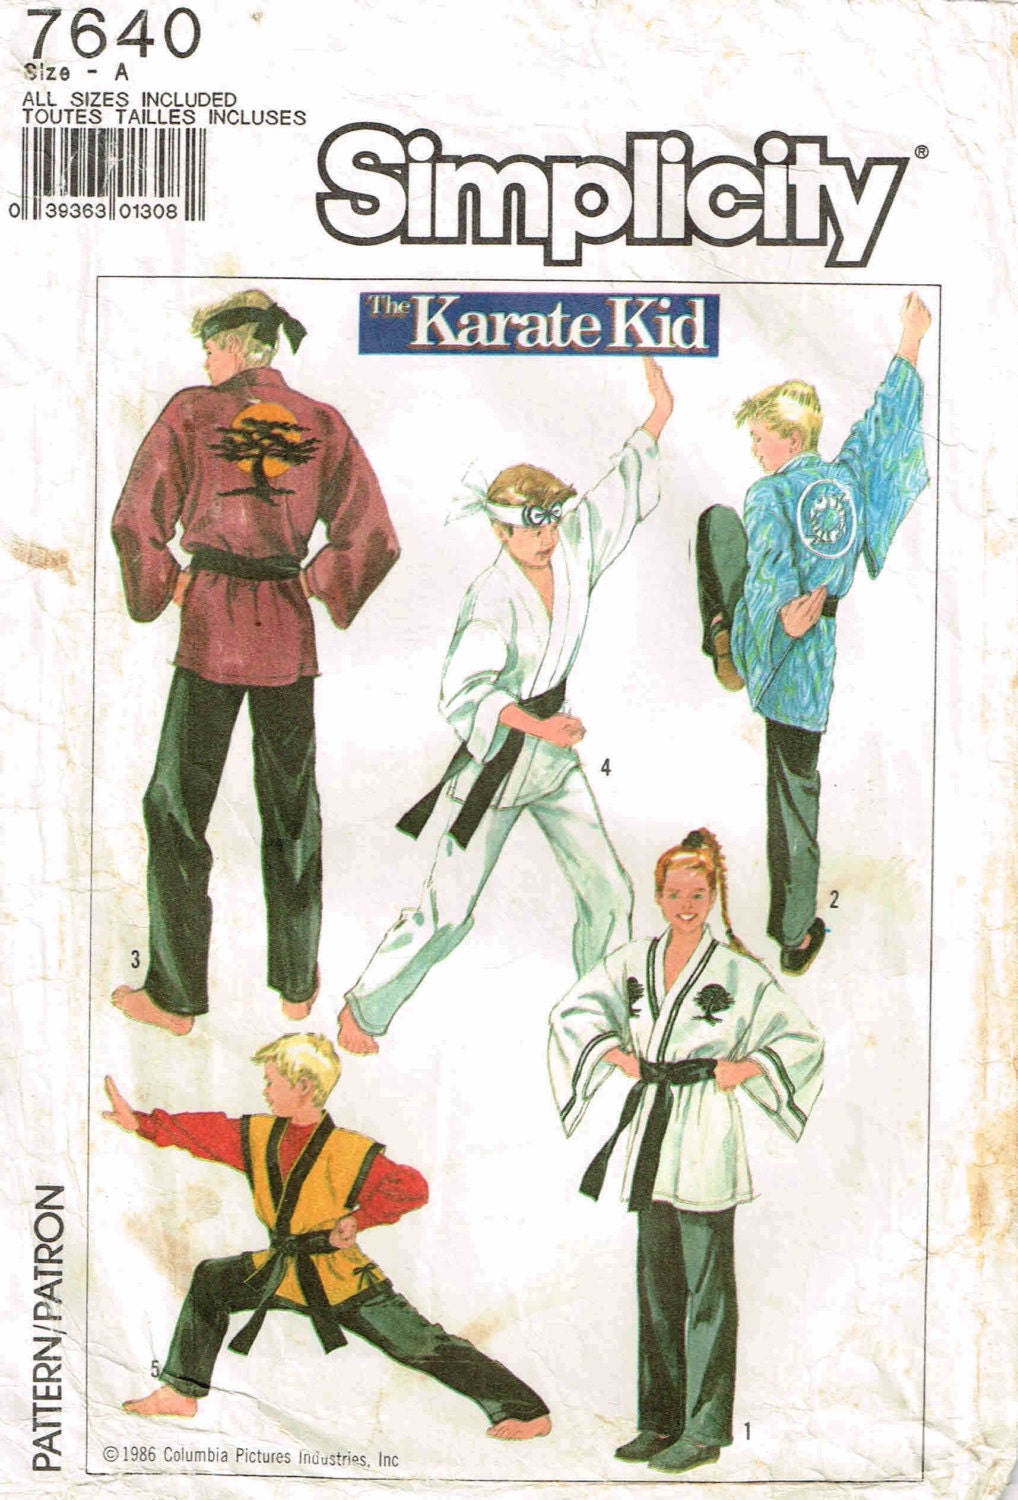 plus dress size regency pattern PeoplePackages Karate belt Pants Uniform by Kimono headband Kid